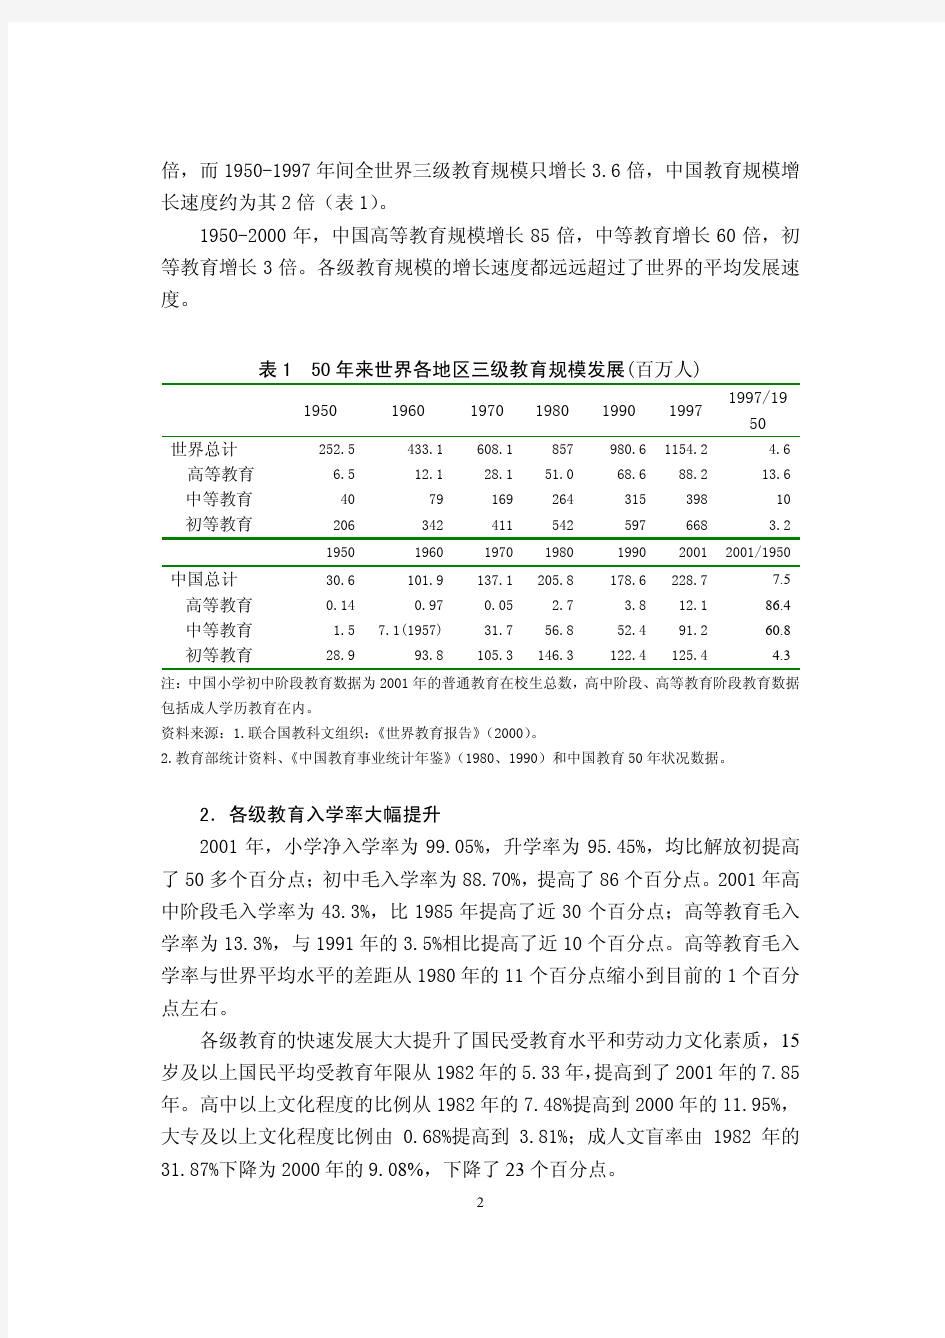 【发展战略】中国教育发展状况分析